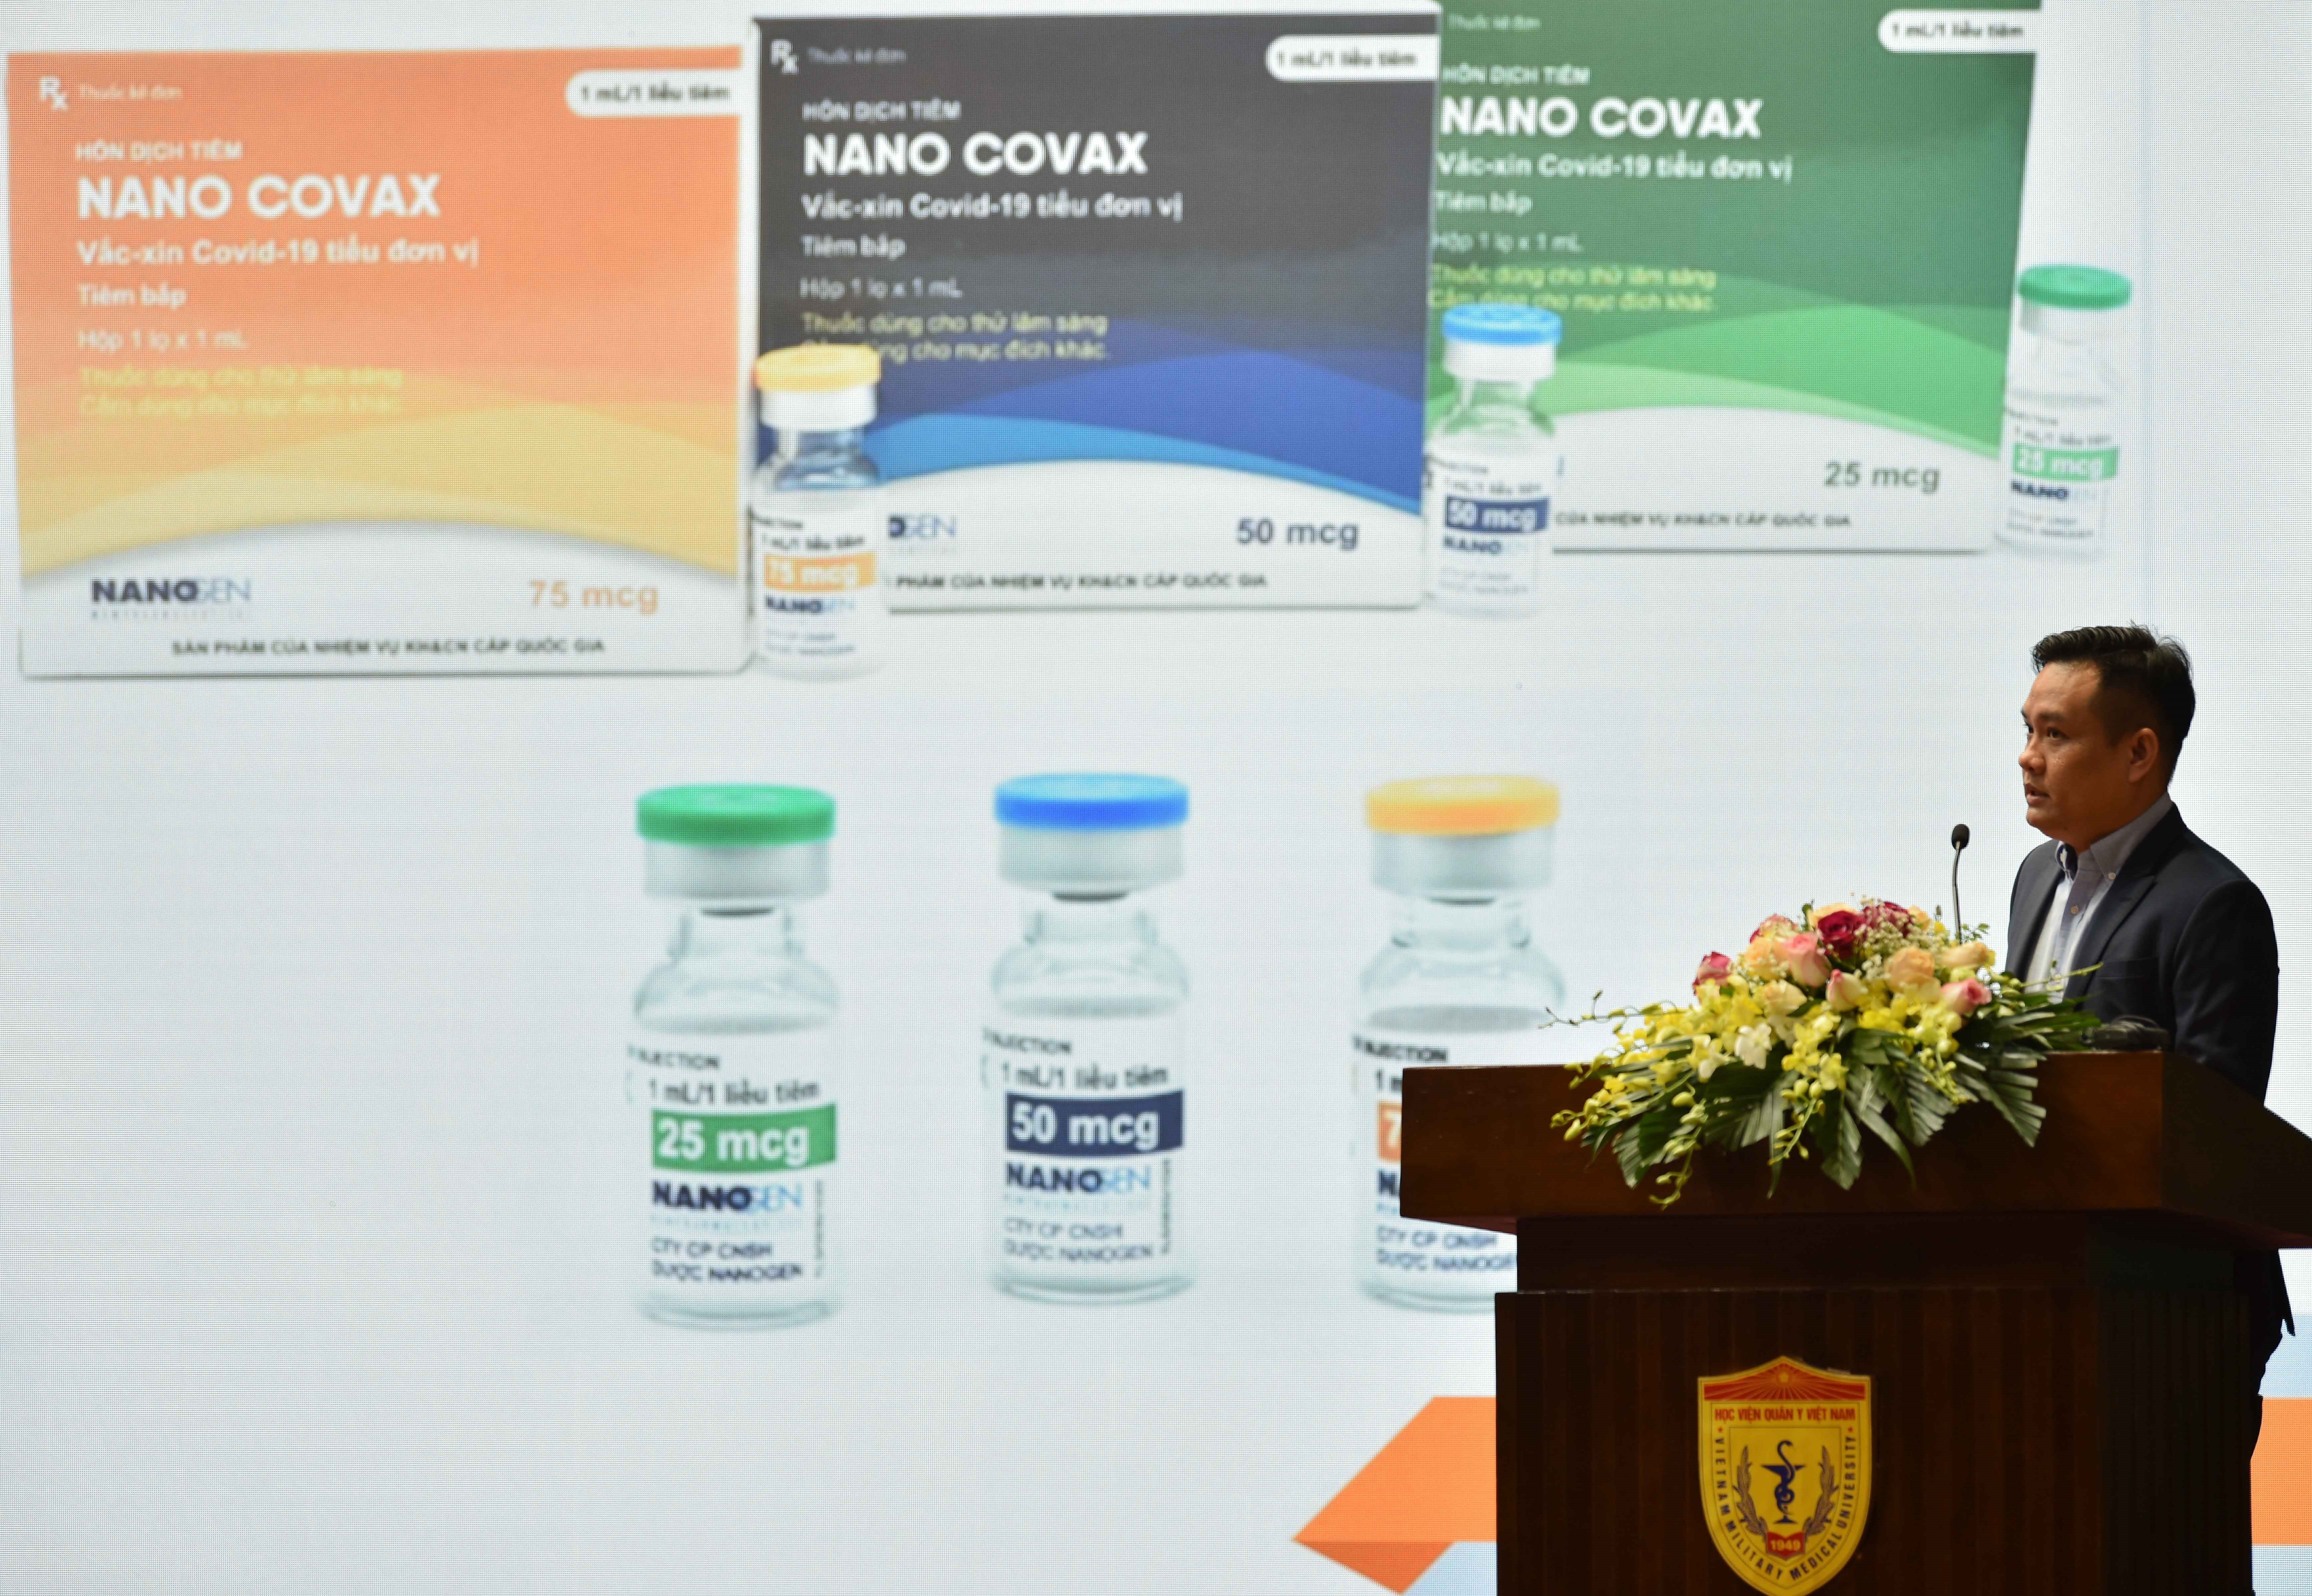 Презентация вакцины NANO COVAX против COVID-19. (Фото: ВИА)